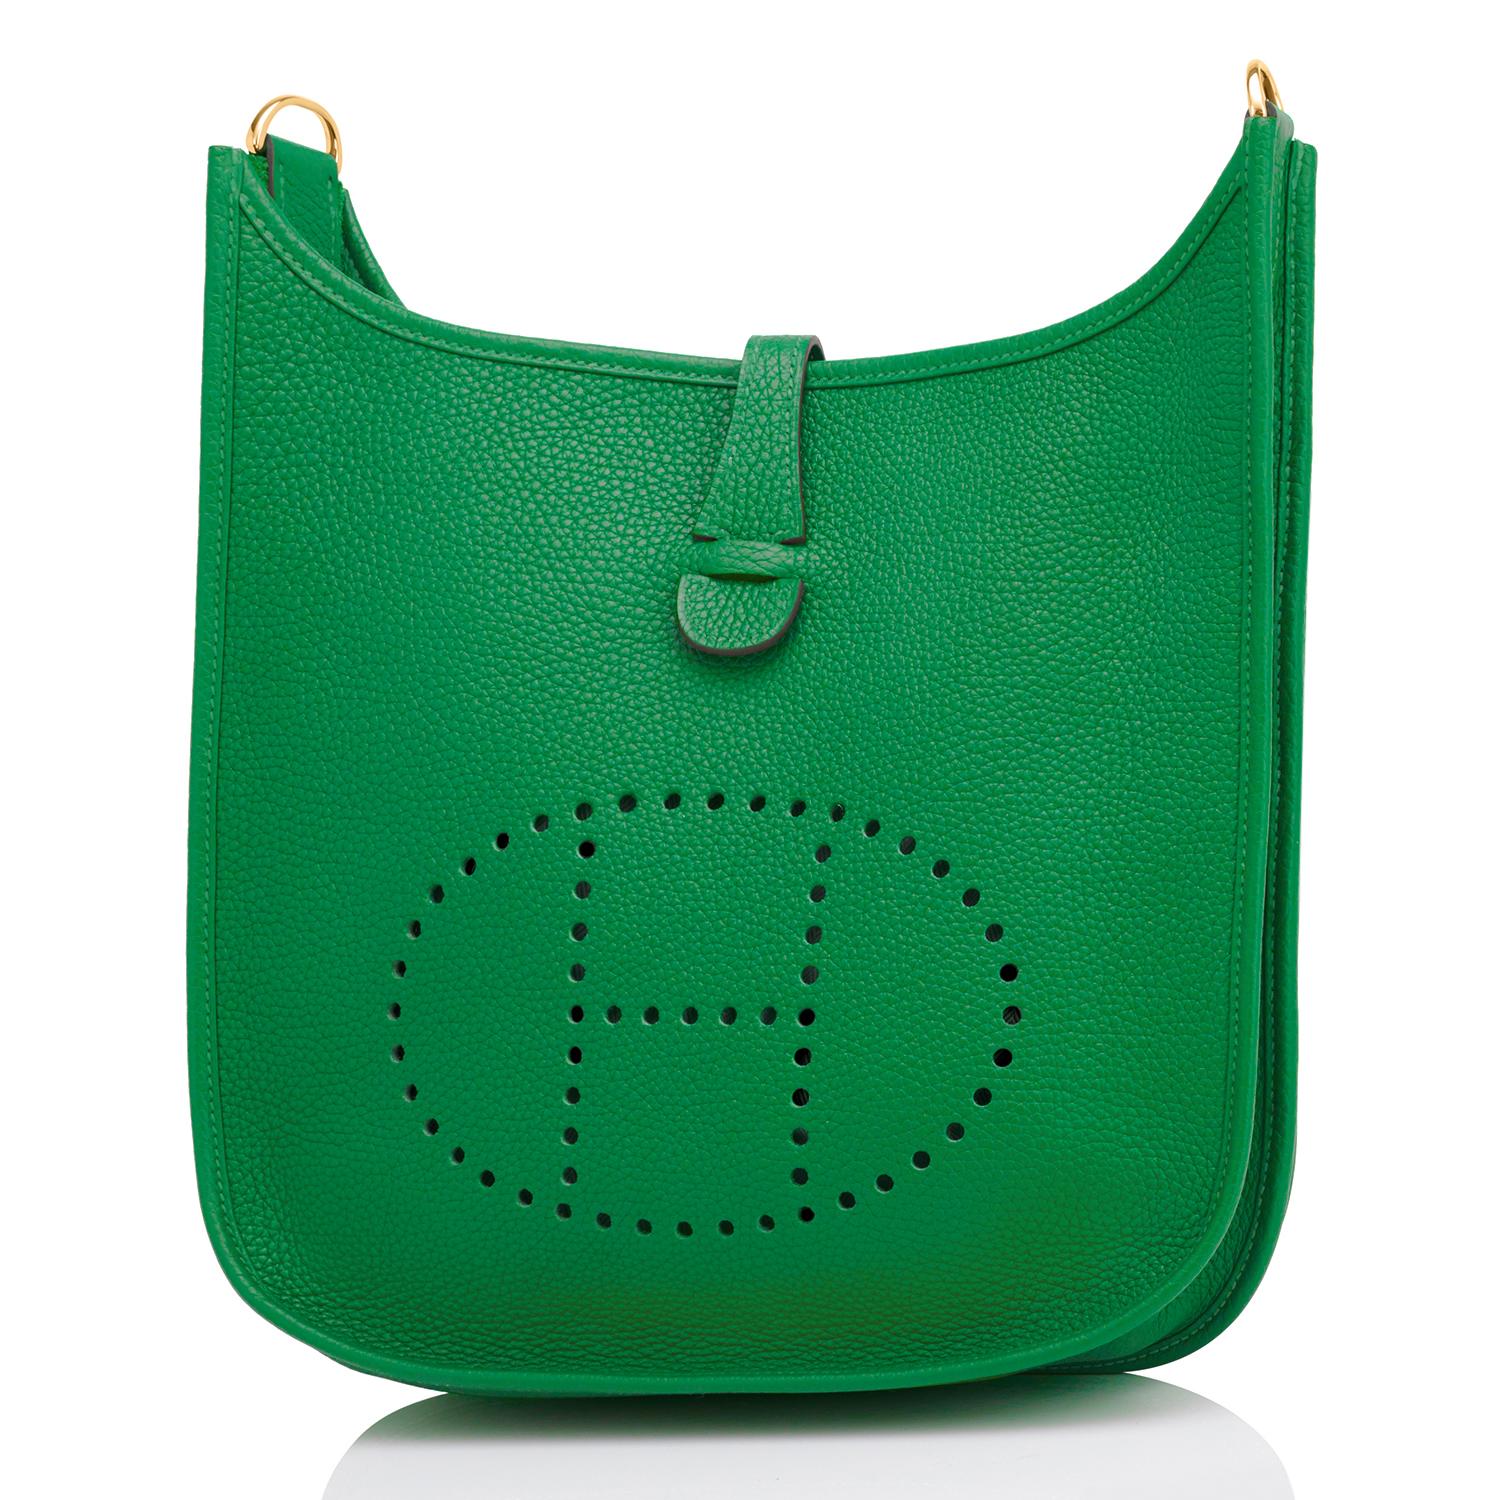 Hermes Evelyne Bag Colors - For Sale on 1stDibs